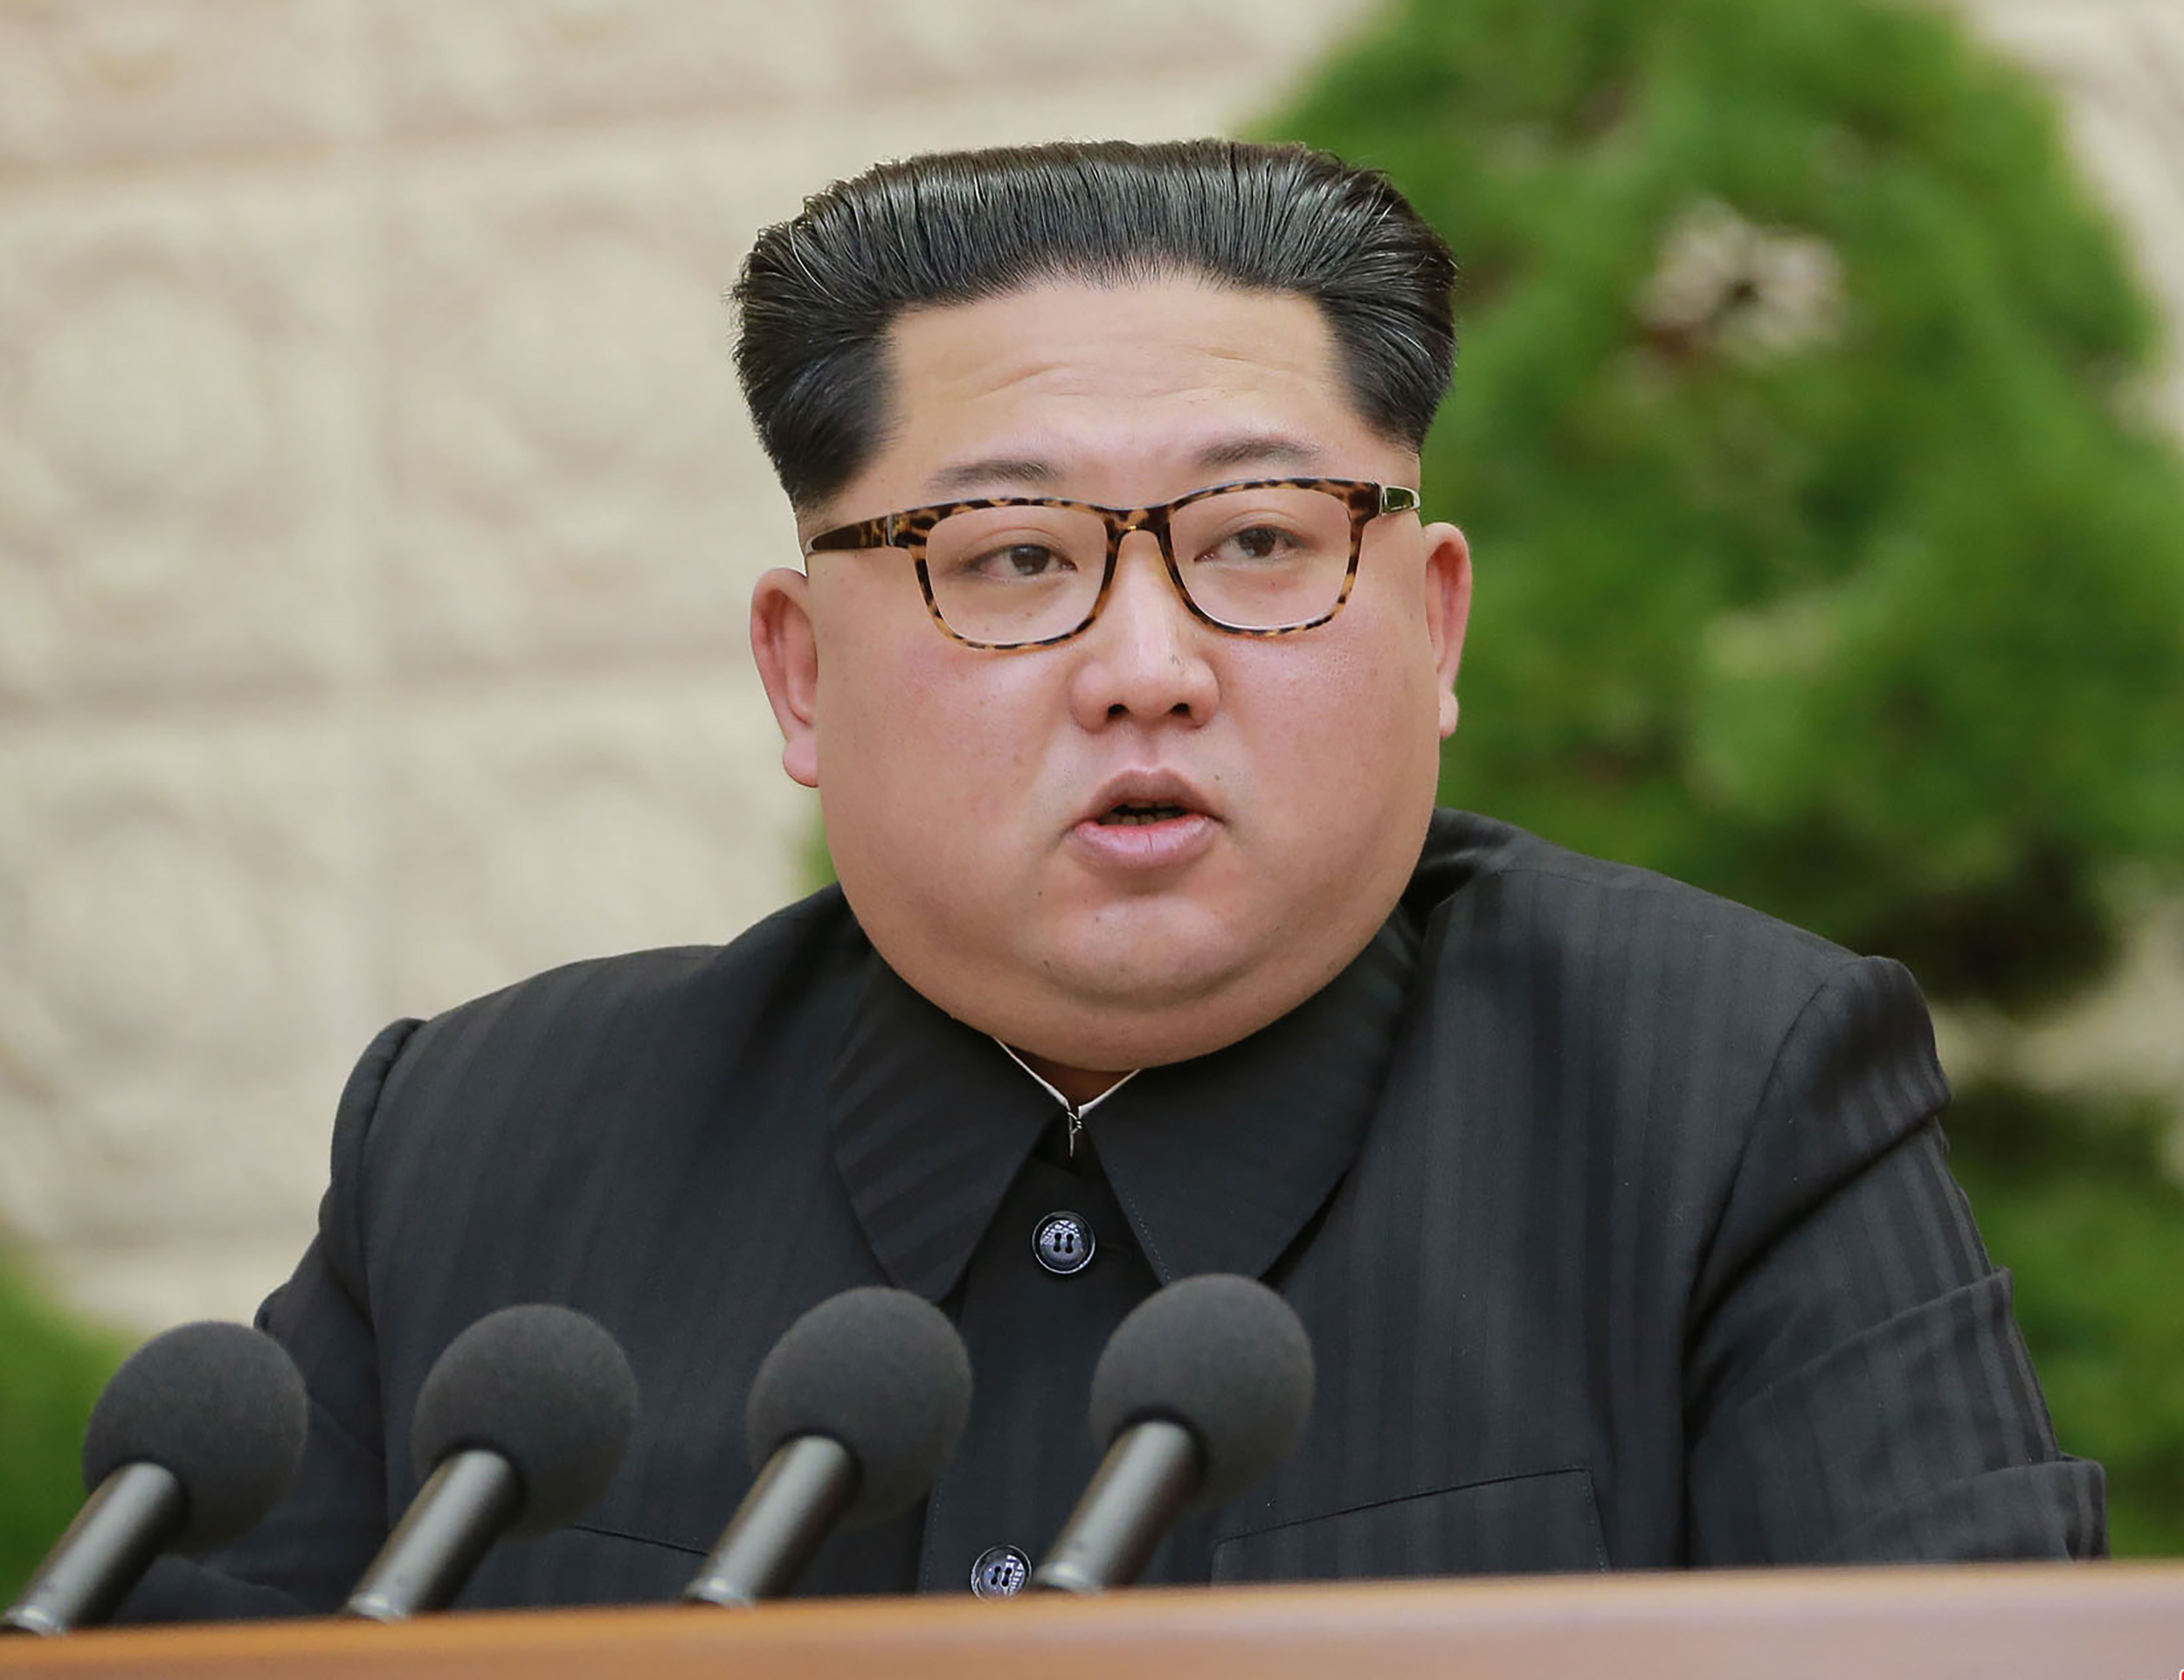 كيم كونج أون زعيم كوريا الشمالية